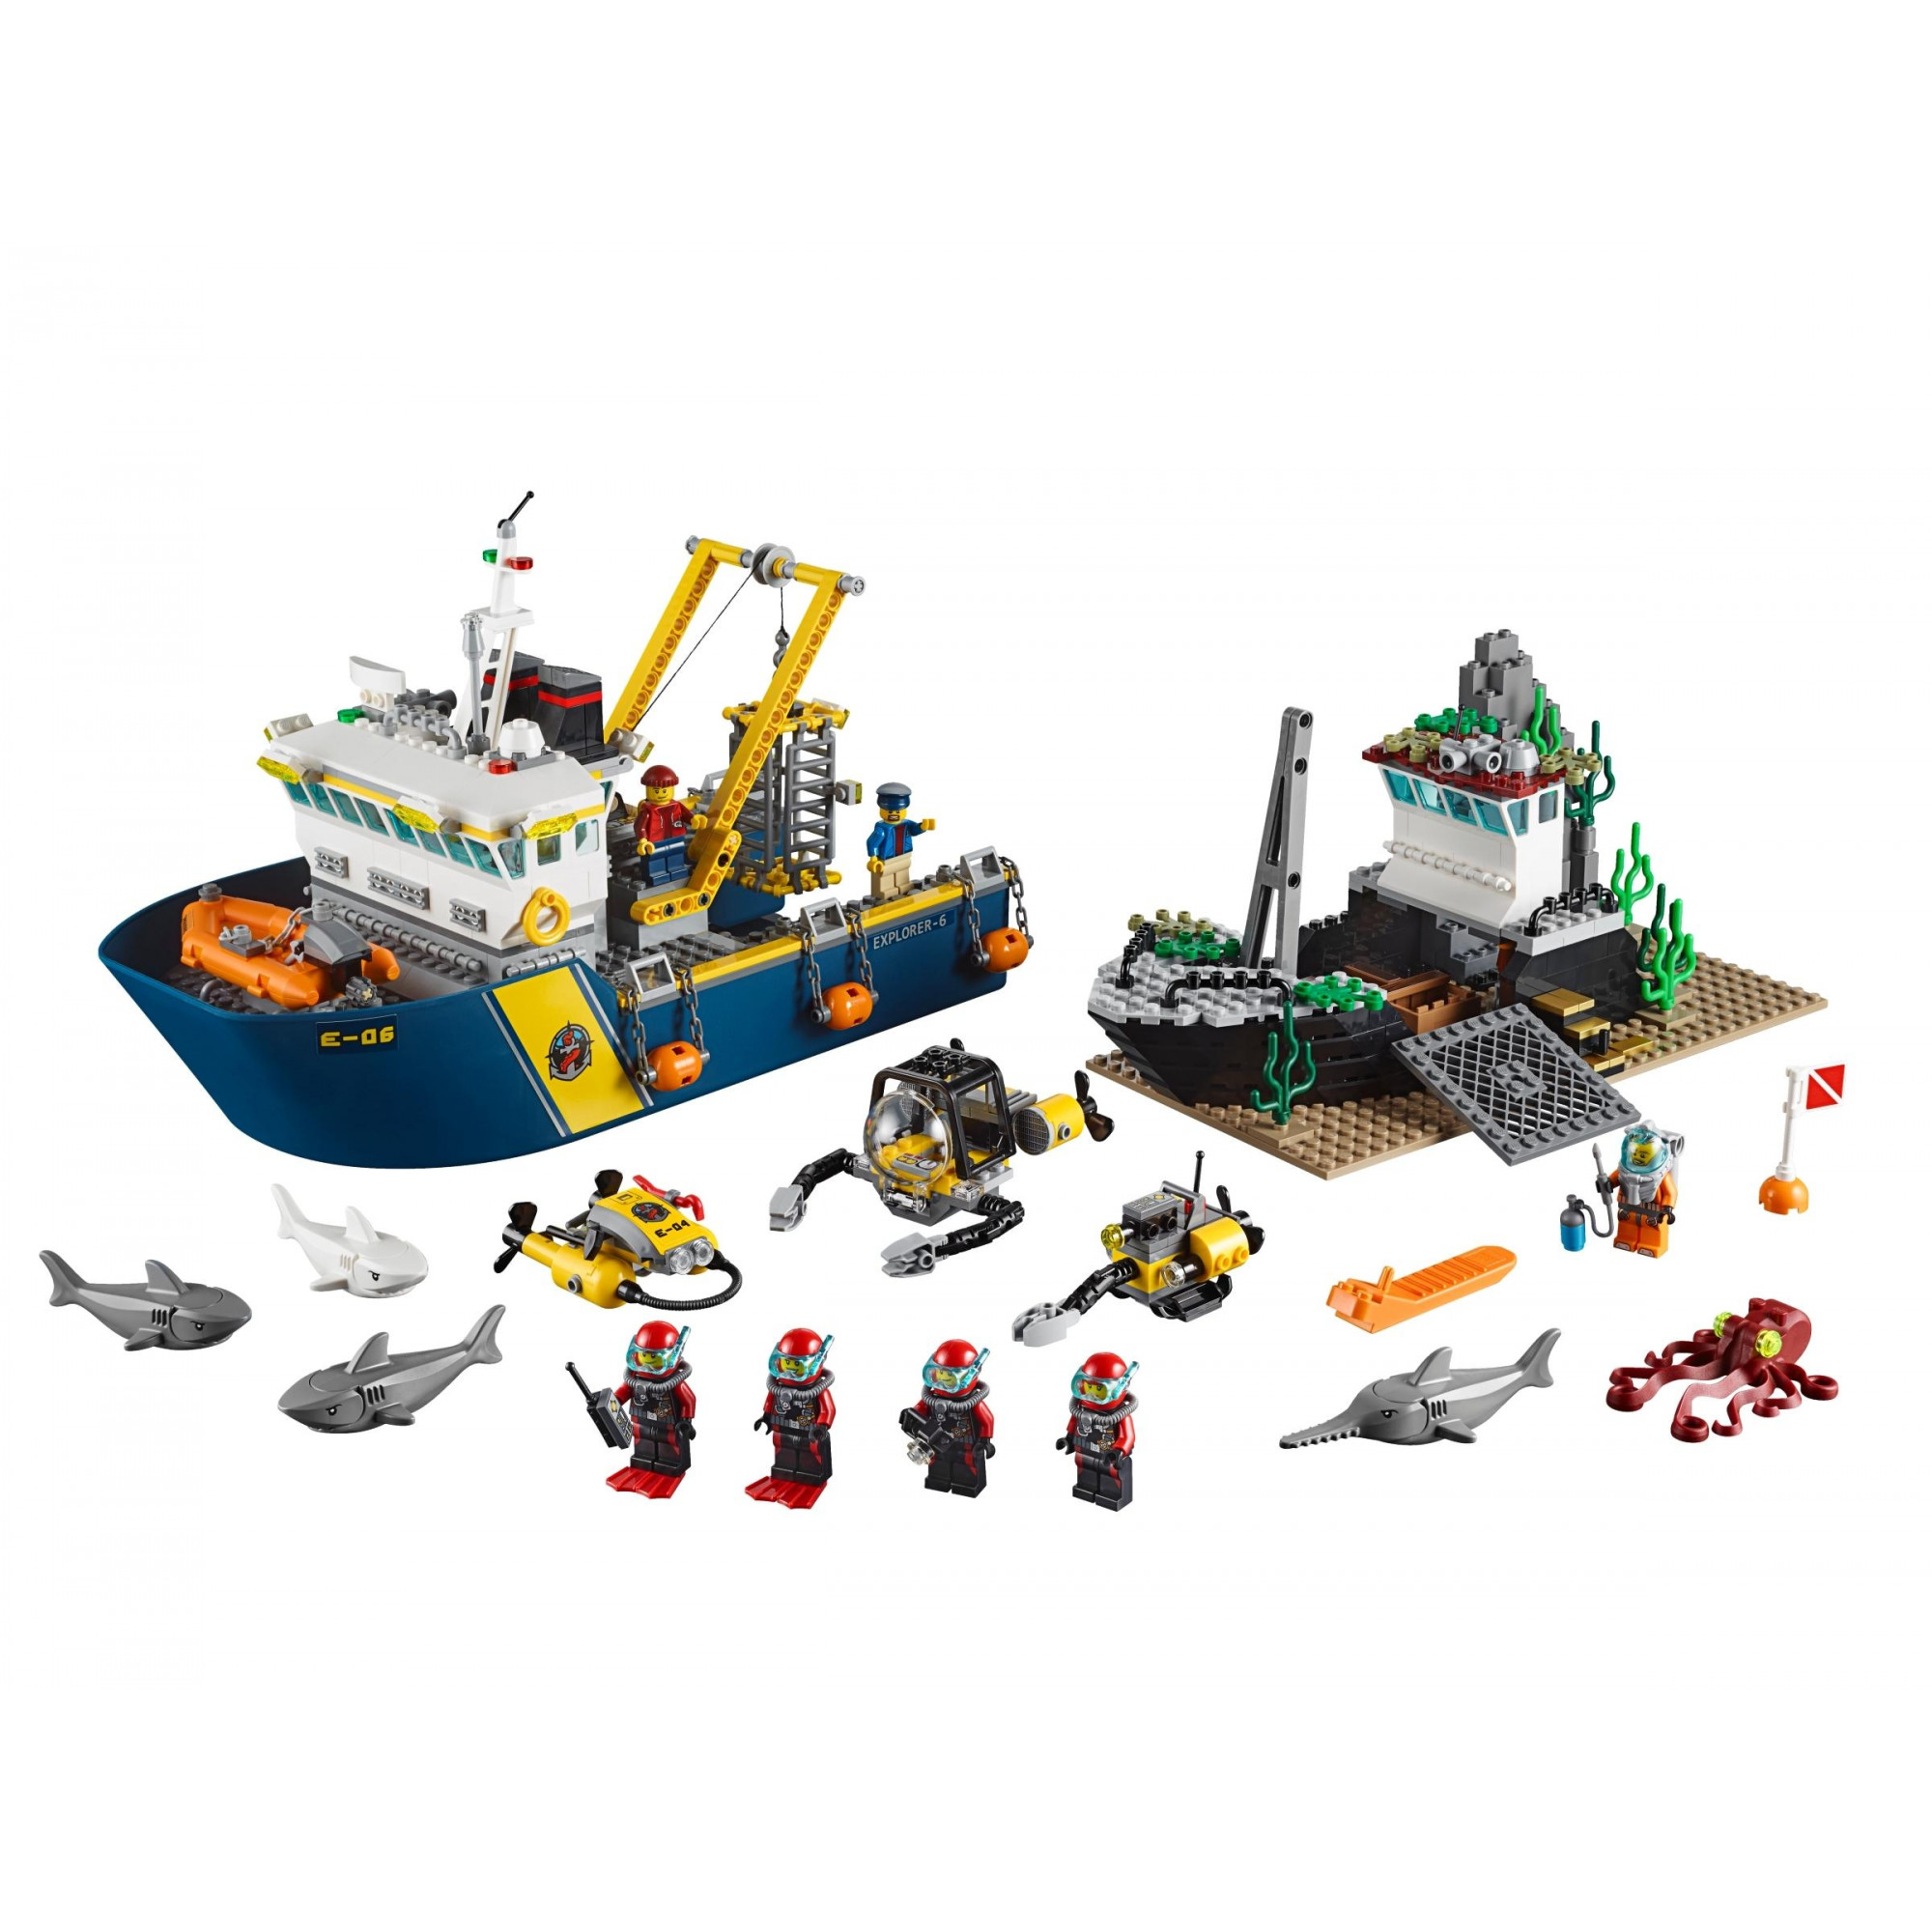 LEGO City Корабль исследователей морских глубин (60095) - зображення 1